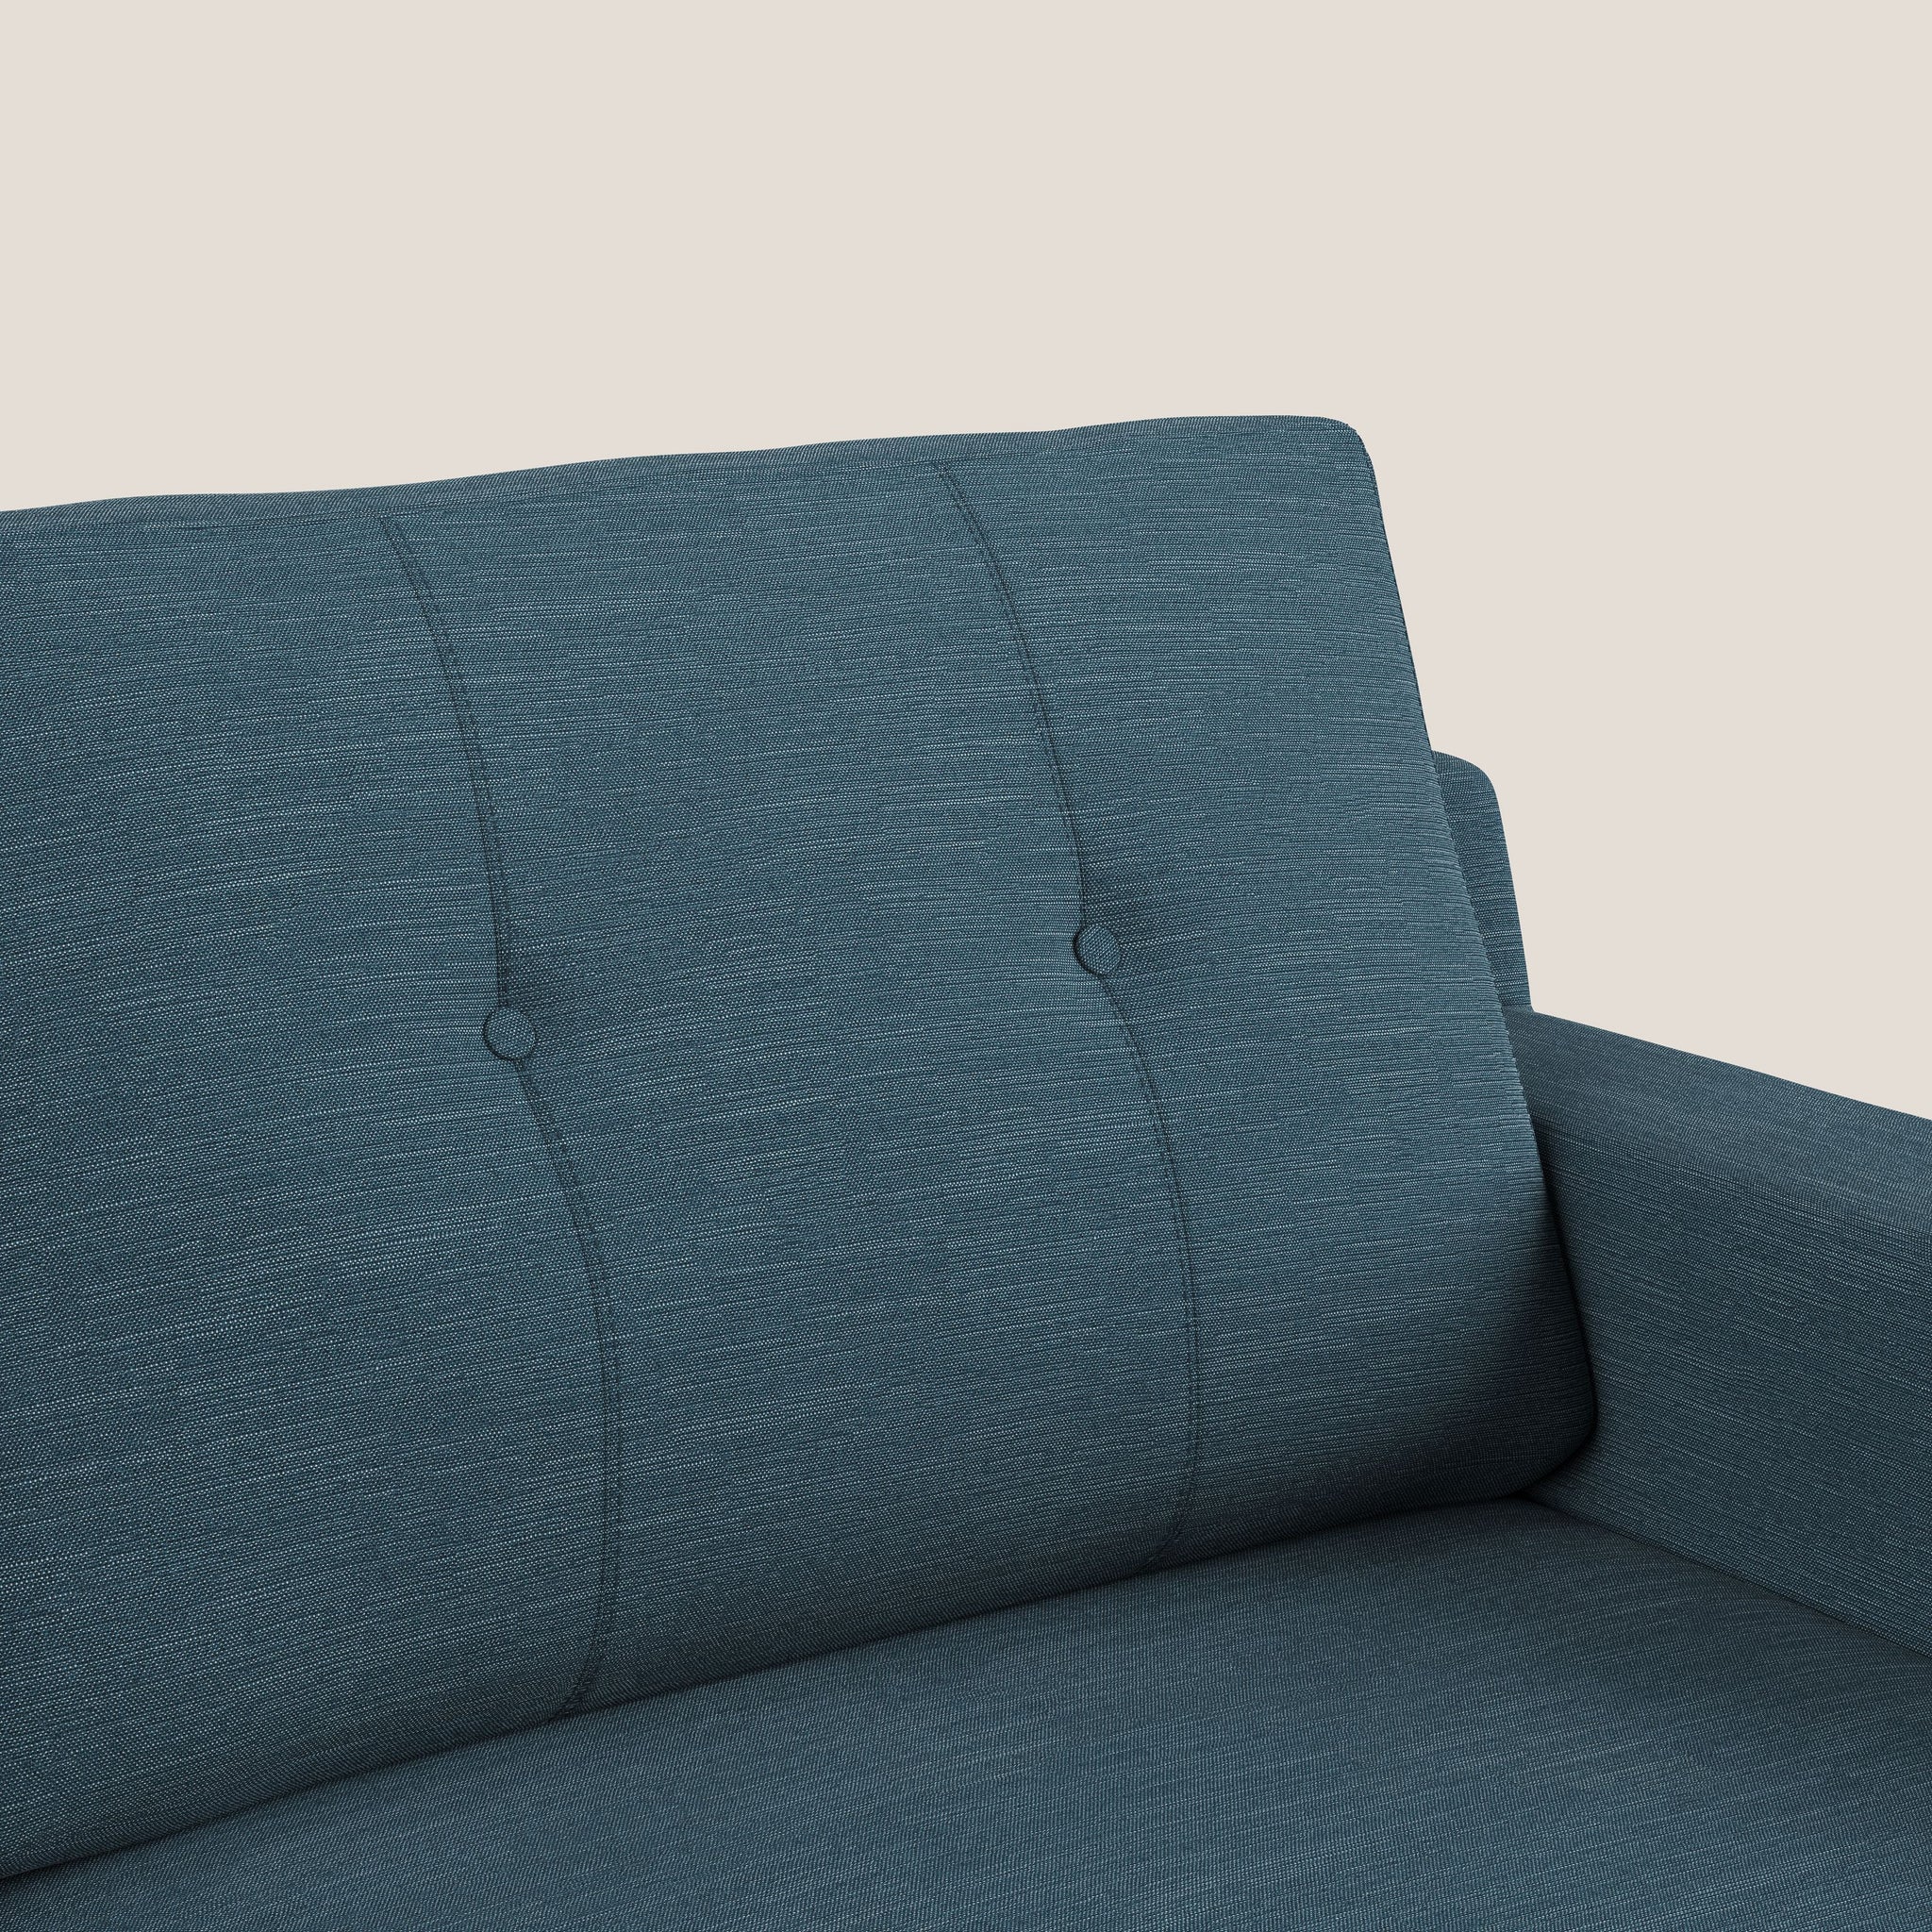 Danish divano angolare reversibile in tessuto ecosostenibile